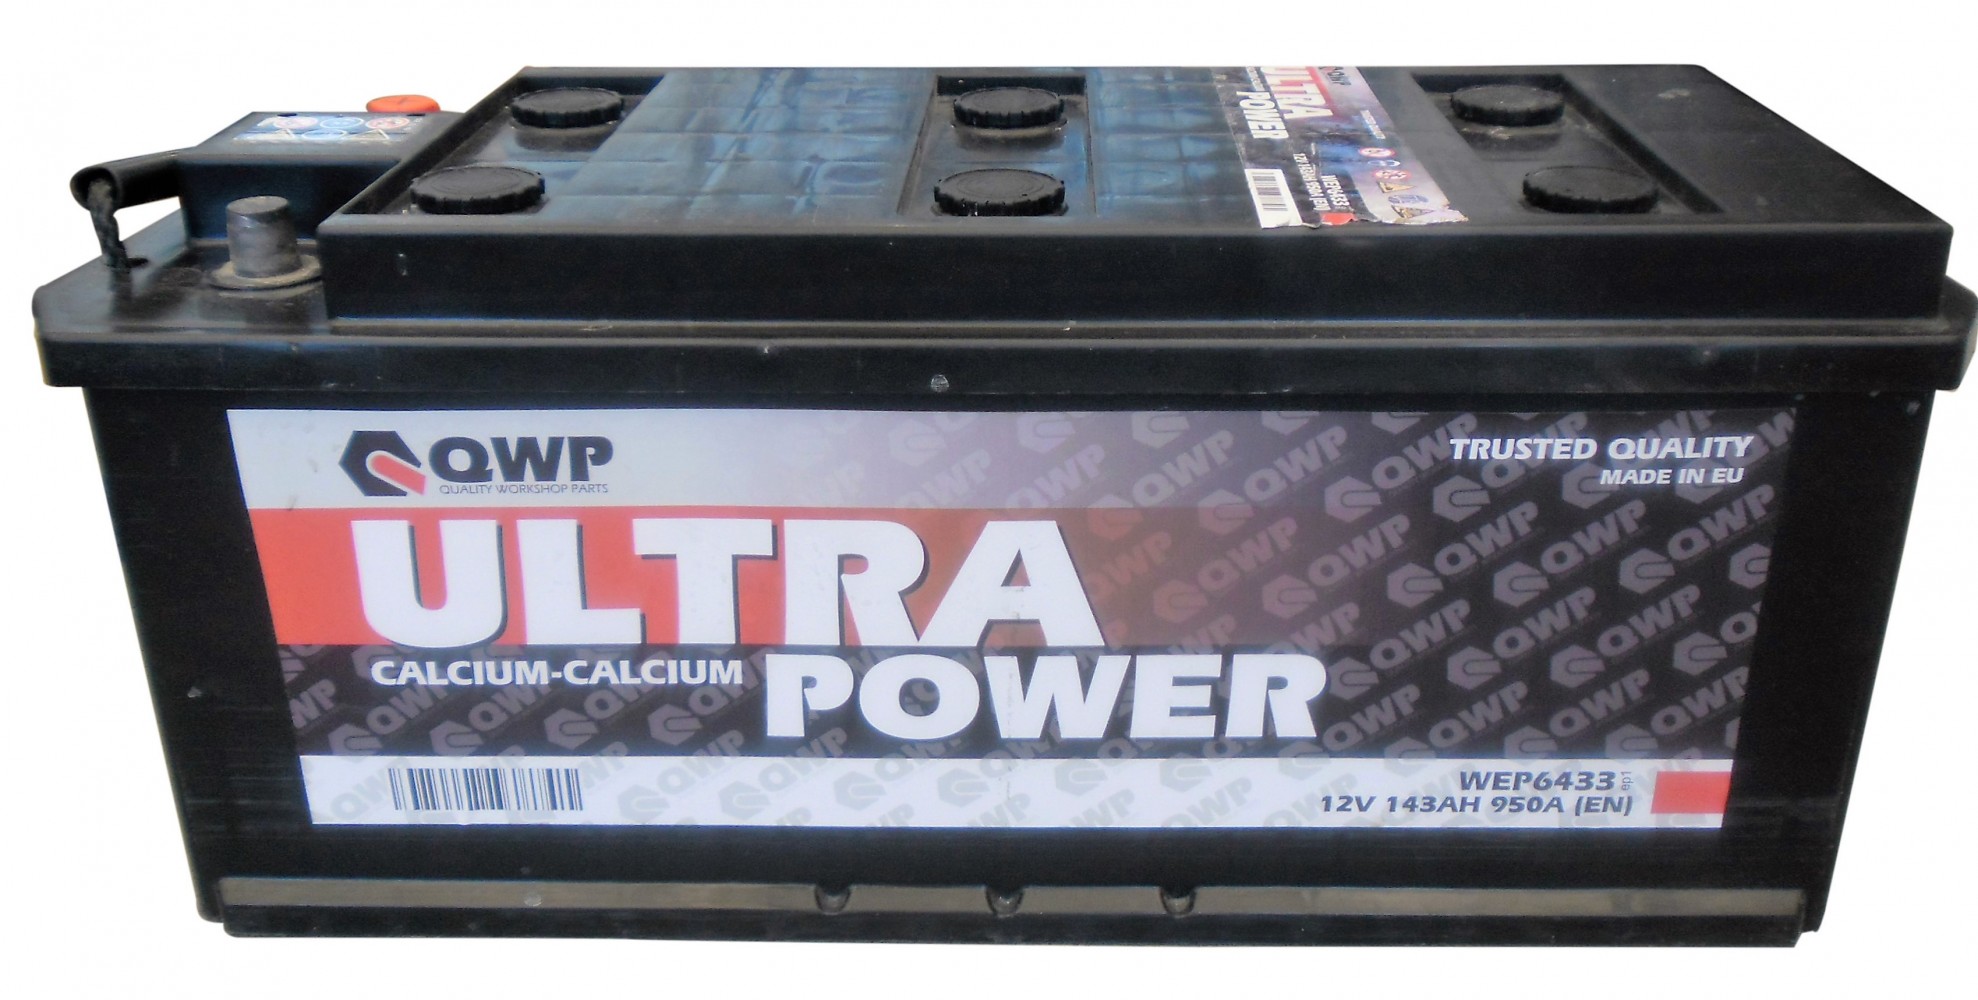 WEP6433 Baterie 143AH 950A QWP 